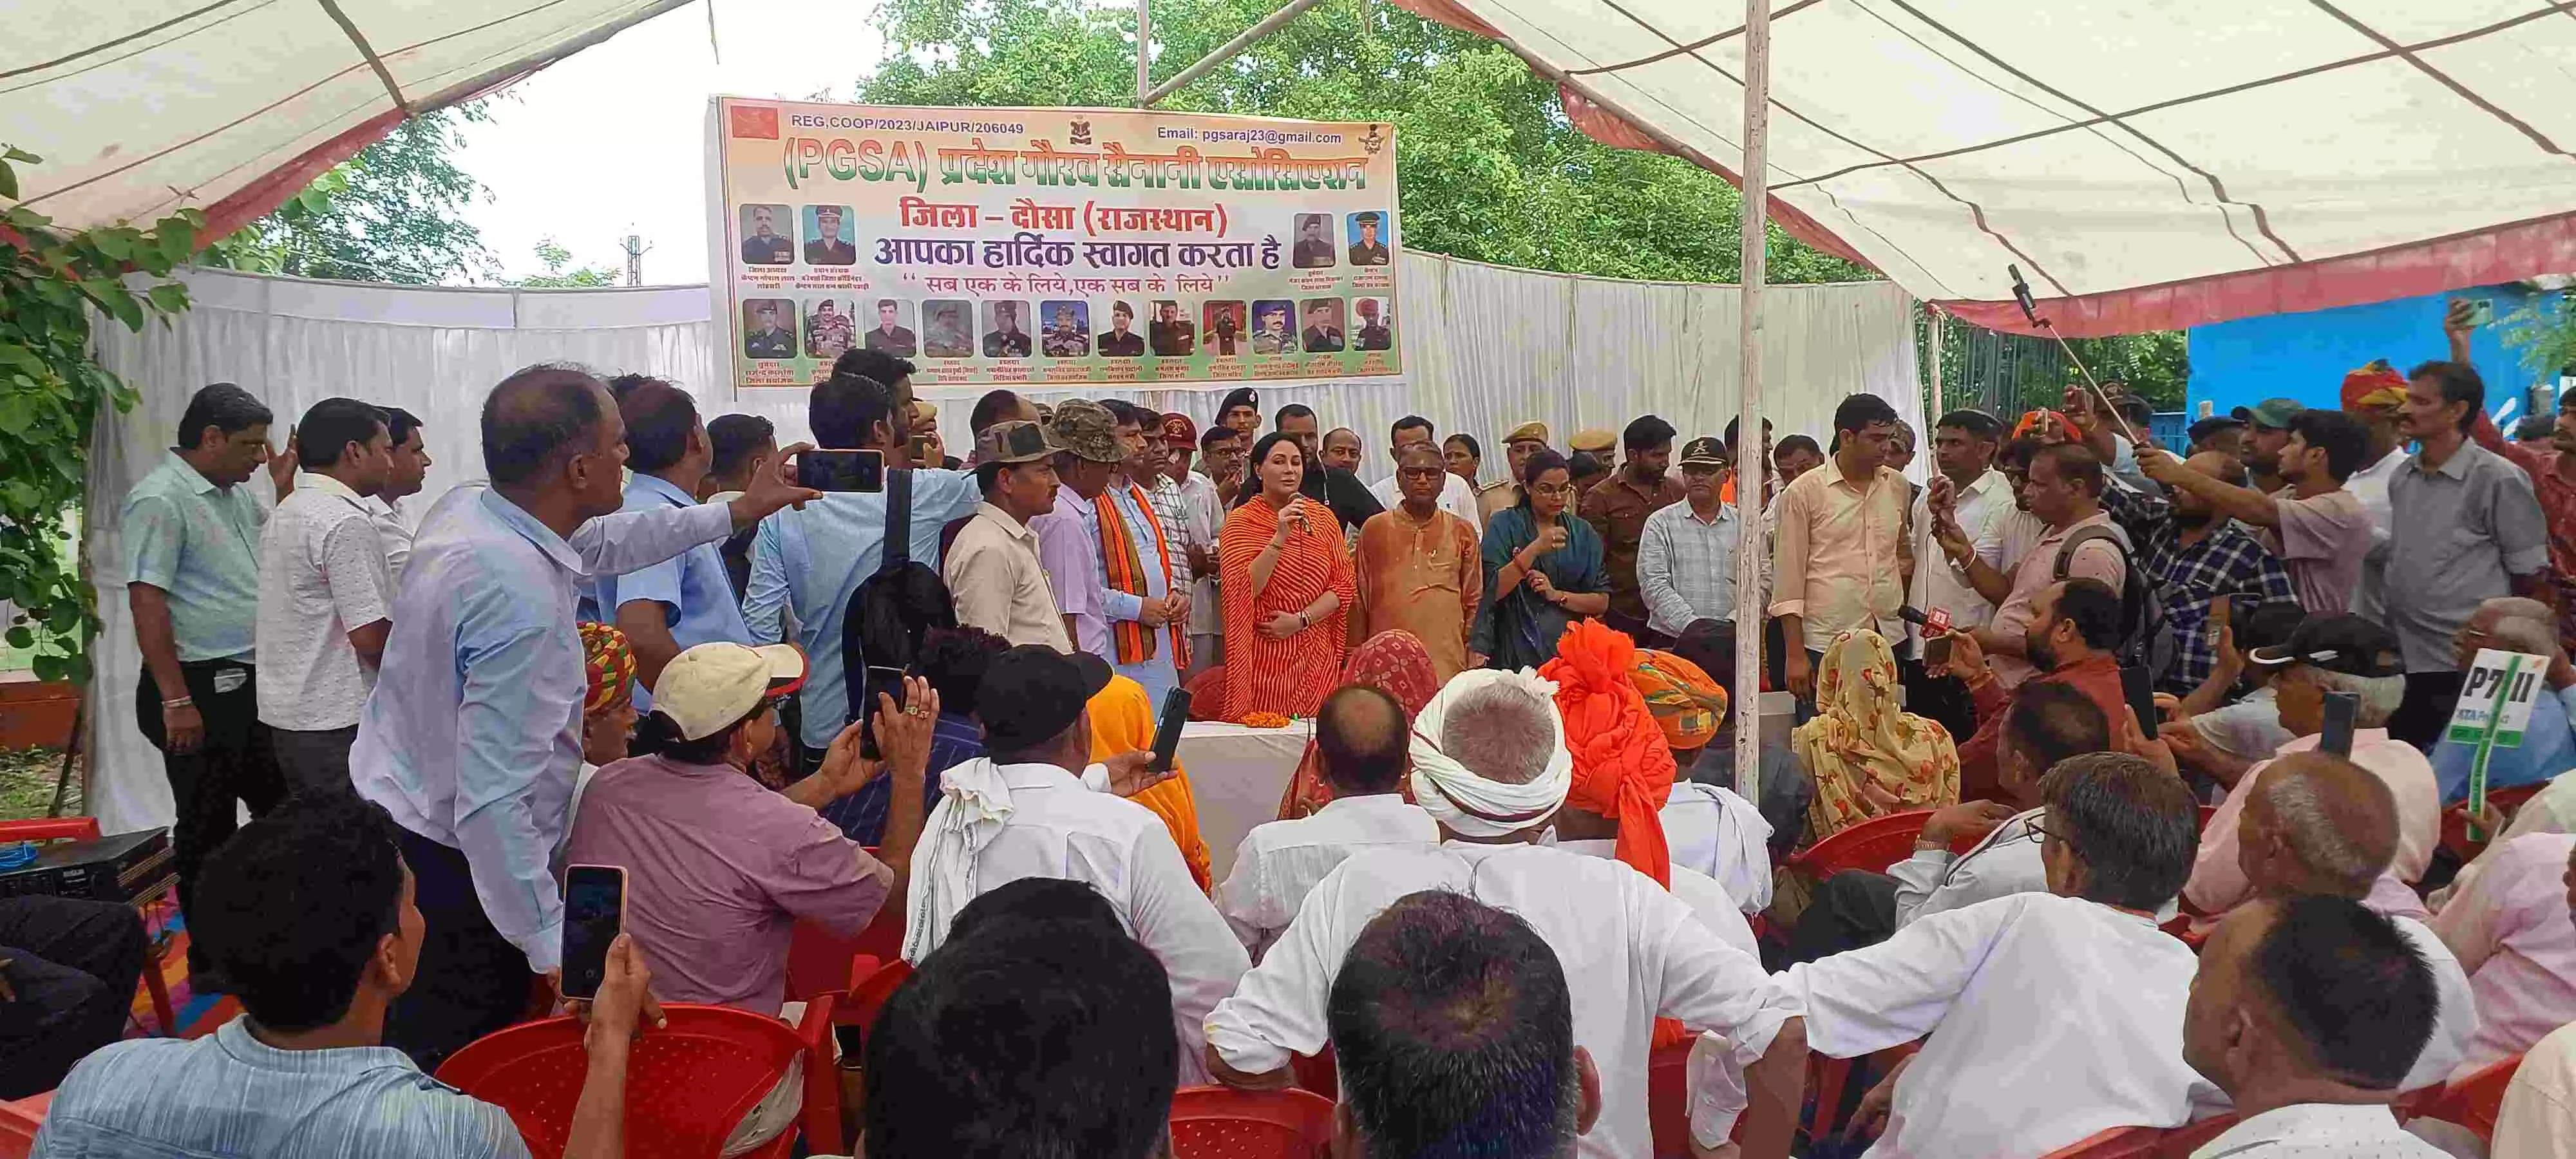 Jaipur : शहीद स्मारक पर मनाया गया कारगिल  विजय दिवस